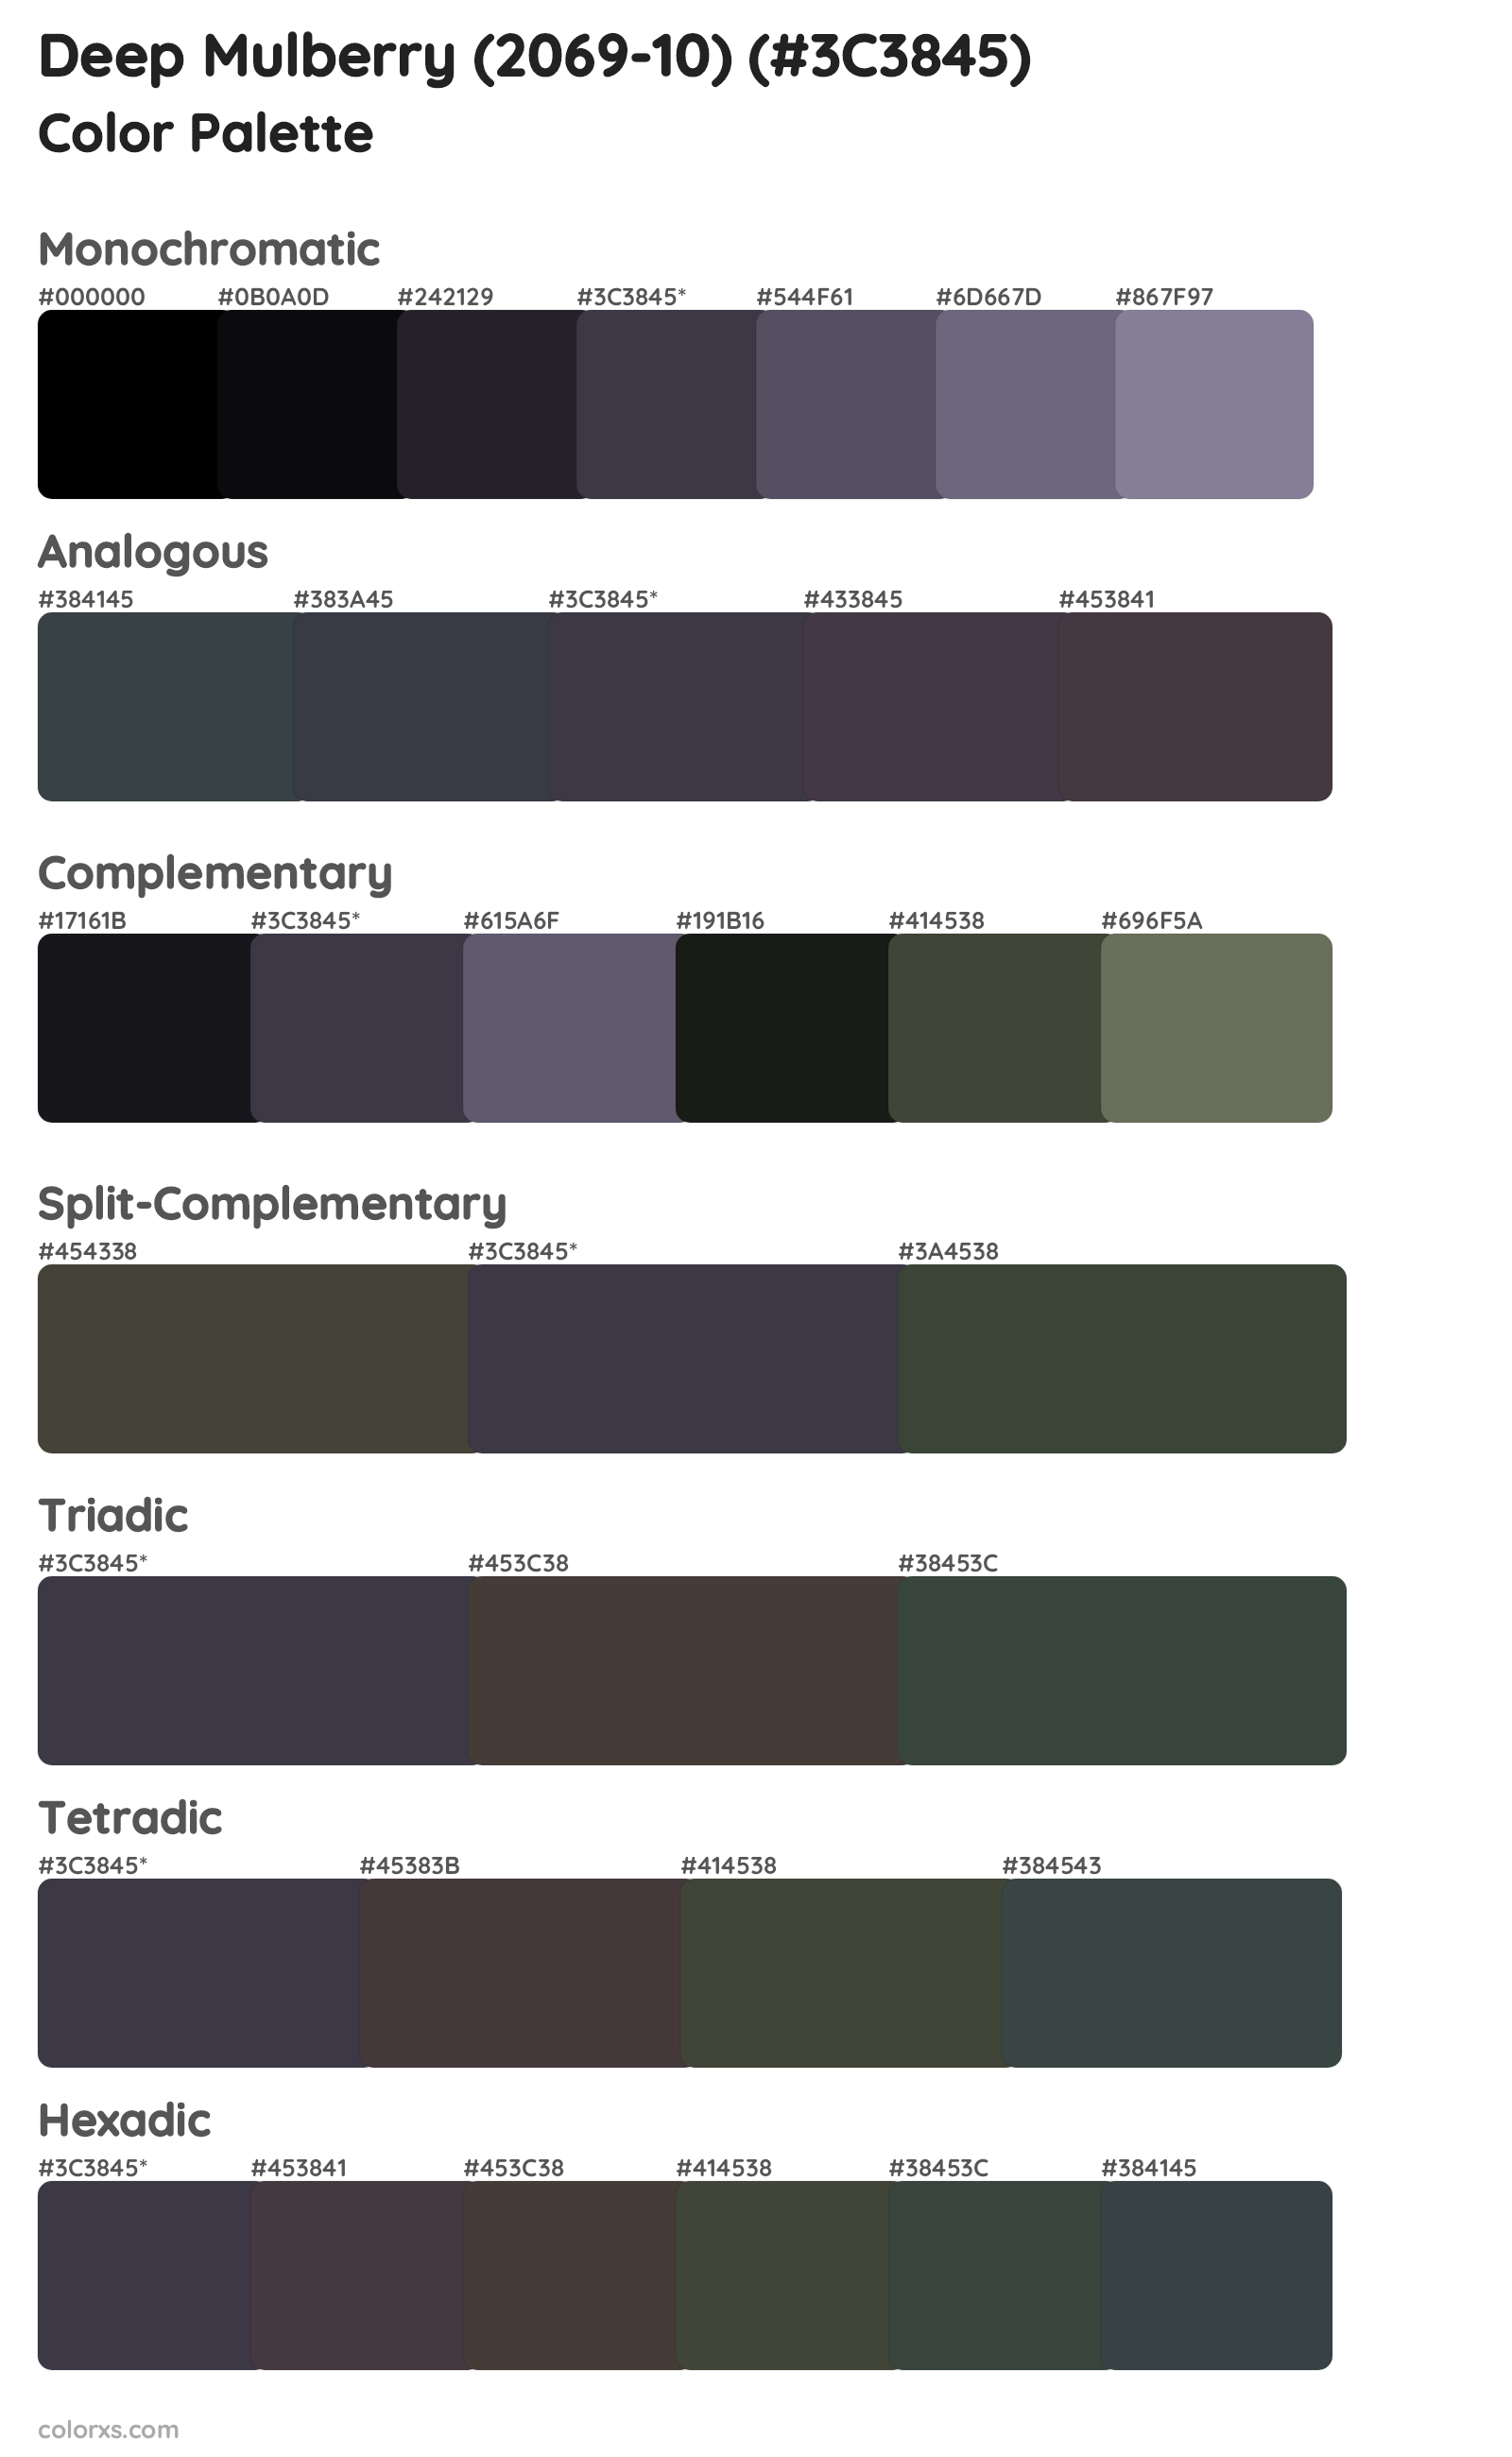 Deep Mulberry (2069-10) Color Scheme Palettes